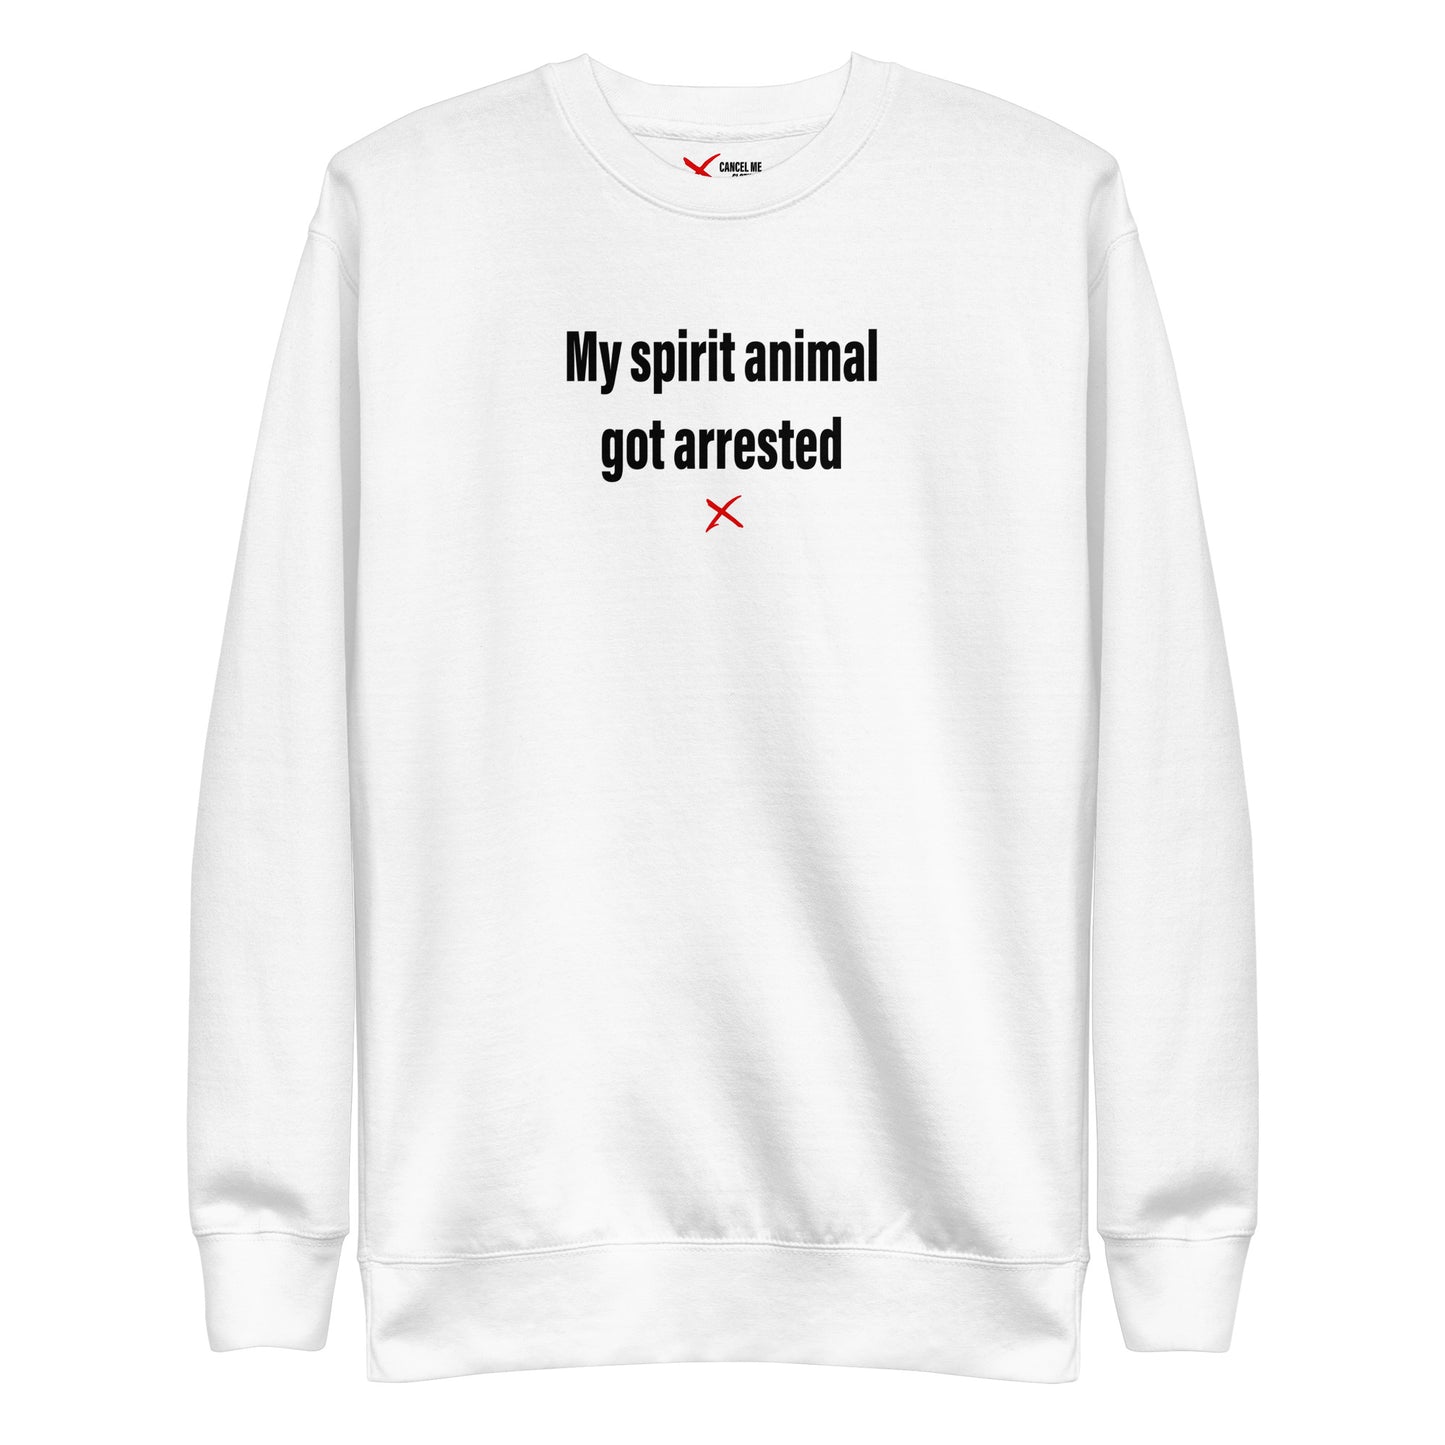 My spirit animal got arrested - Sweatshirt